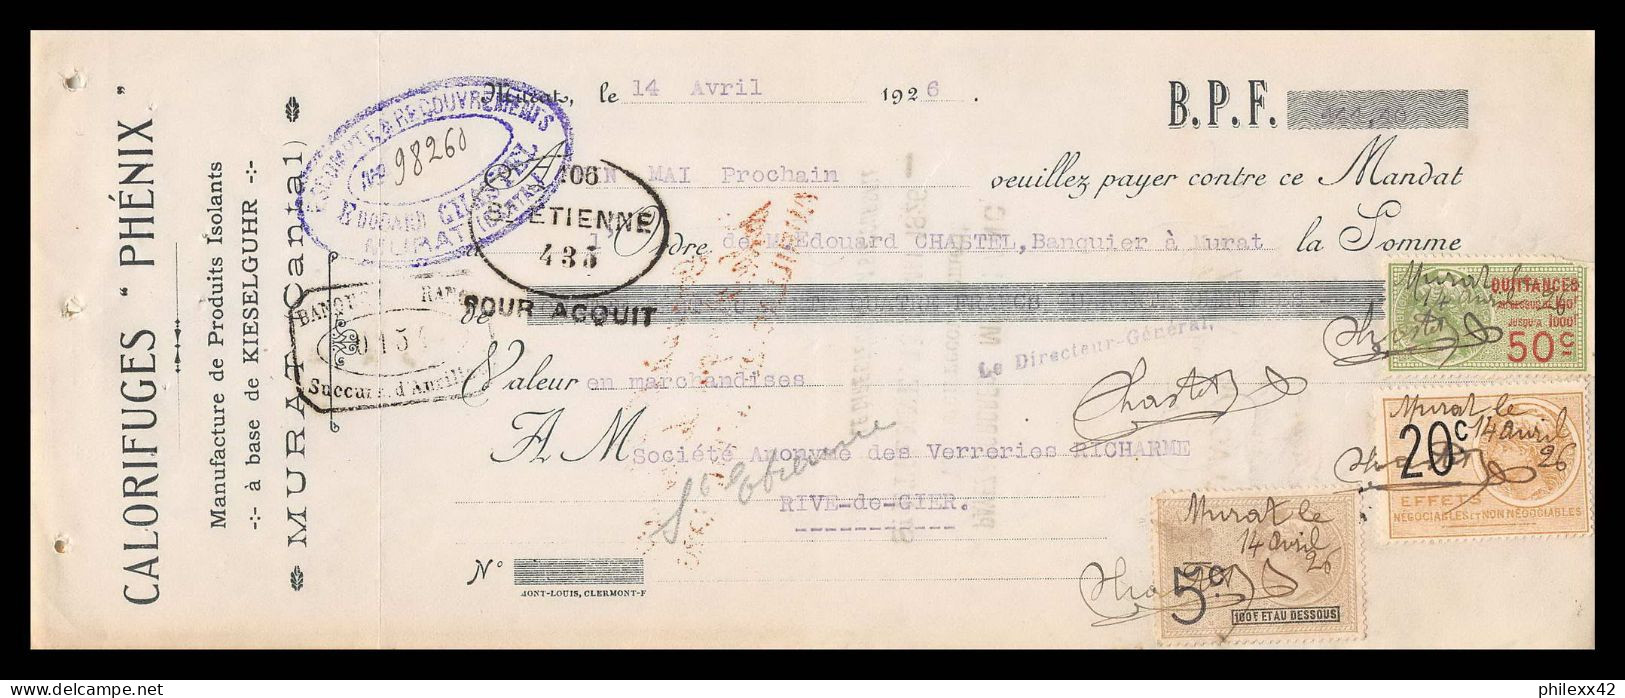 12979 Calorifuges Phénix Murat Cantal Verreries Richarme Rive De Gier Loire 1926 Timbre Fiscal Fiscaux France - Lettres & Documents